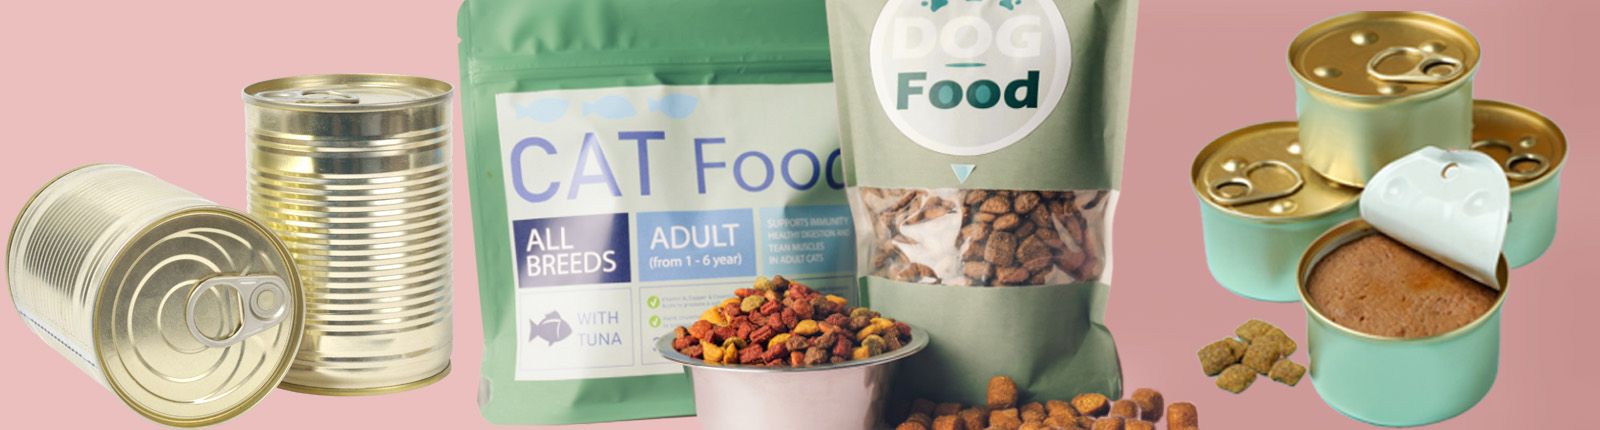 Pet food at Food Banks image